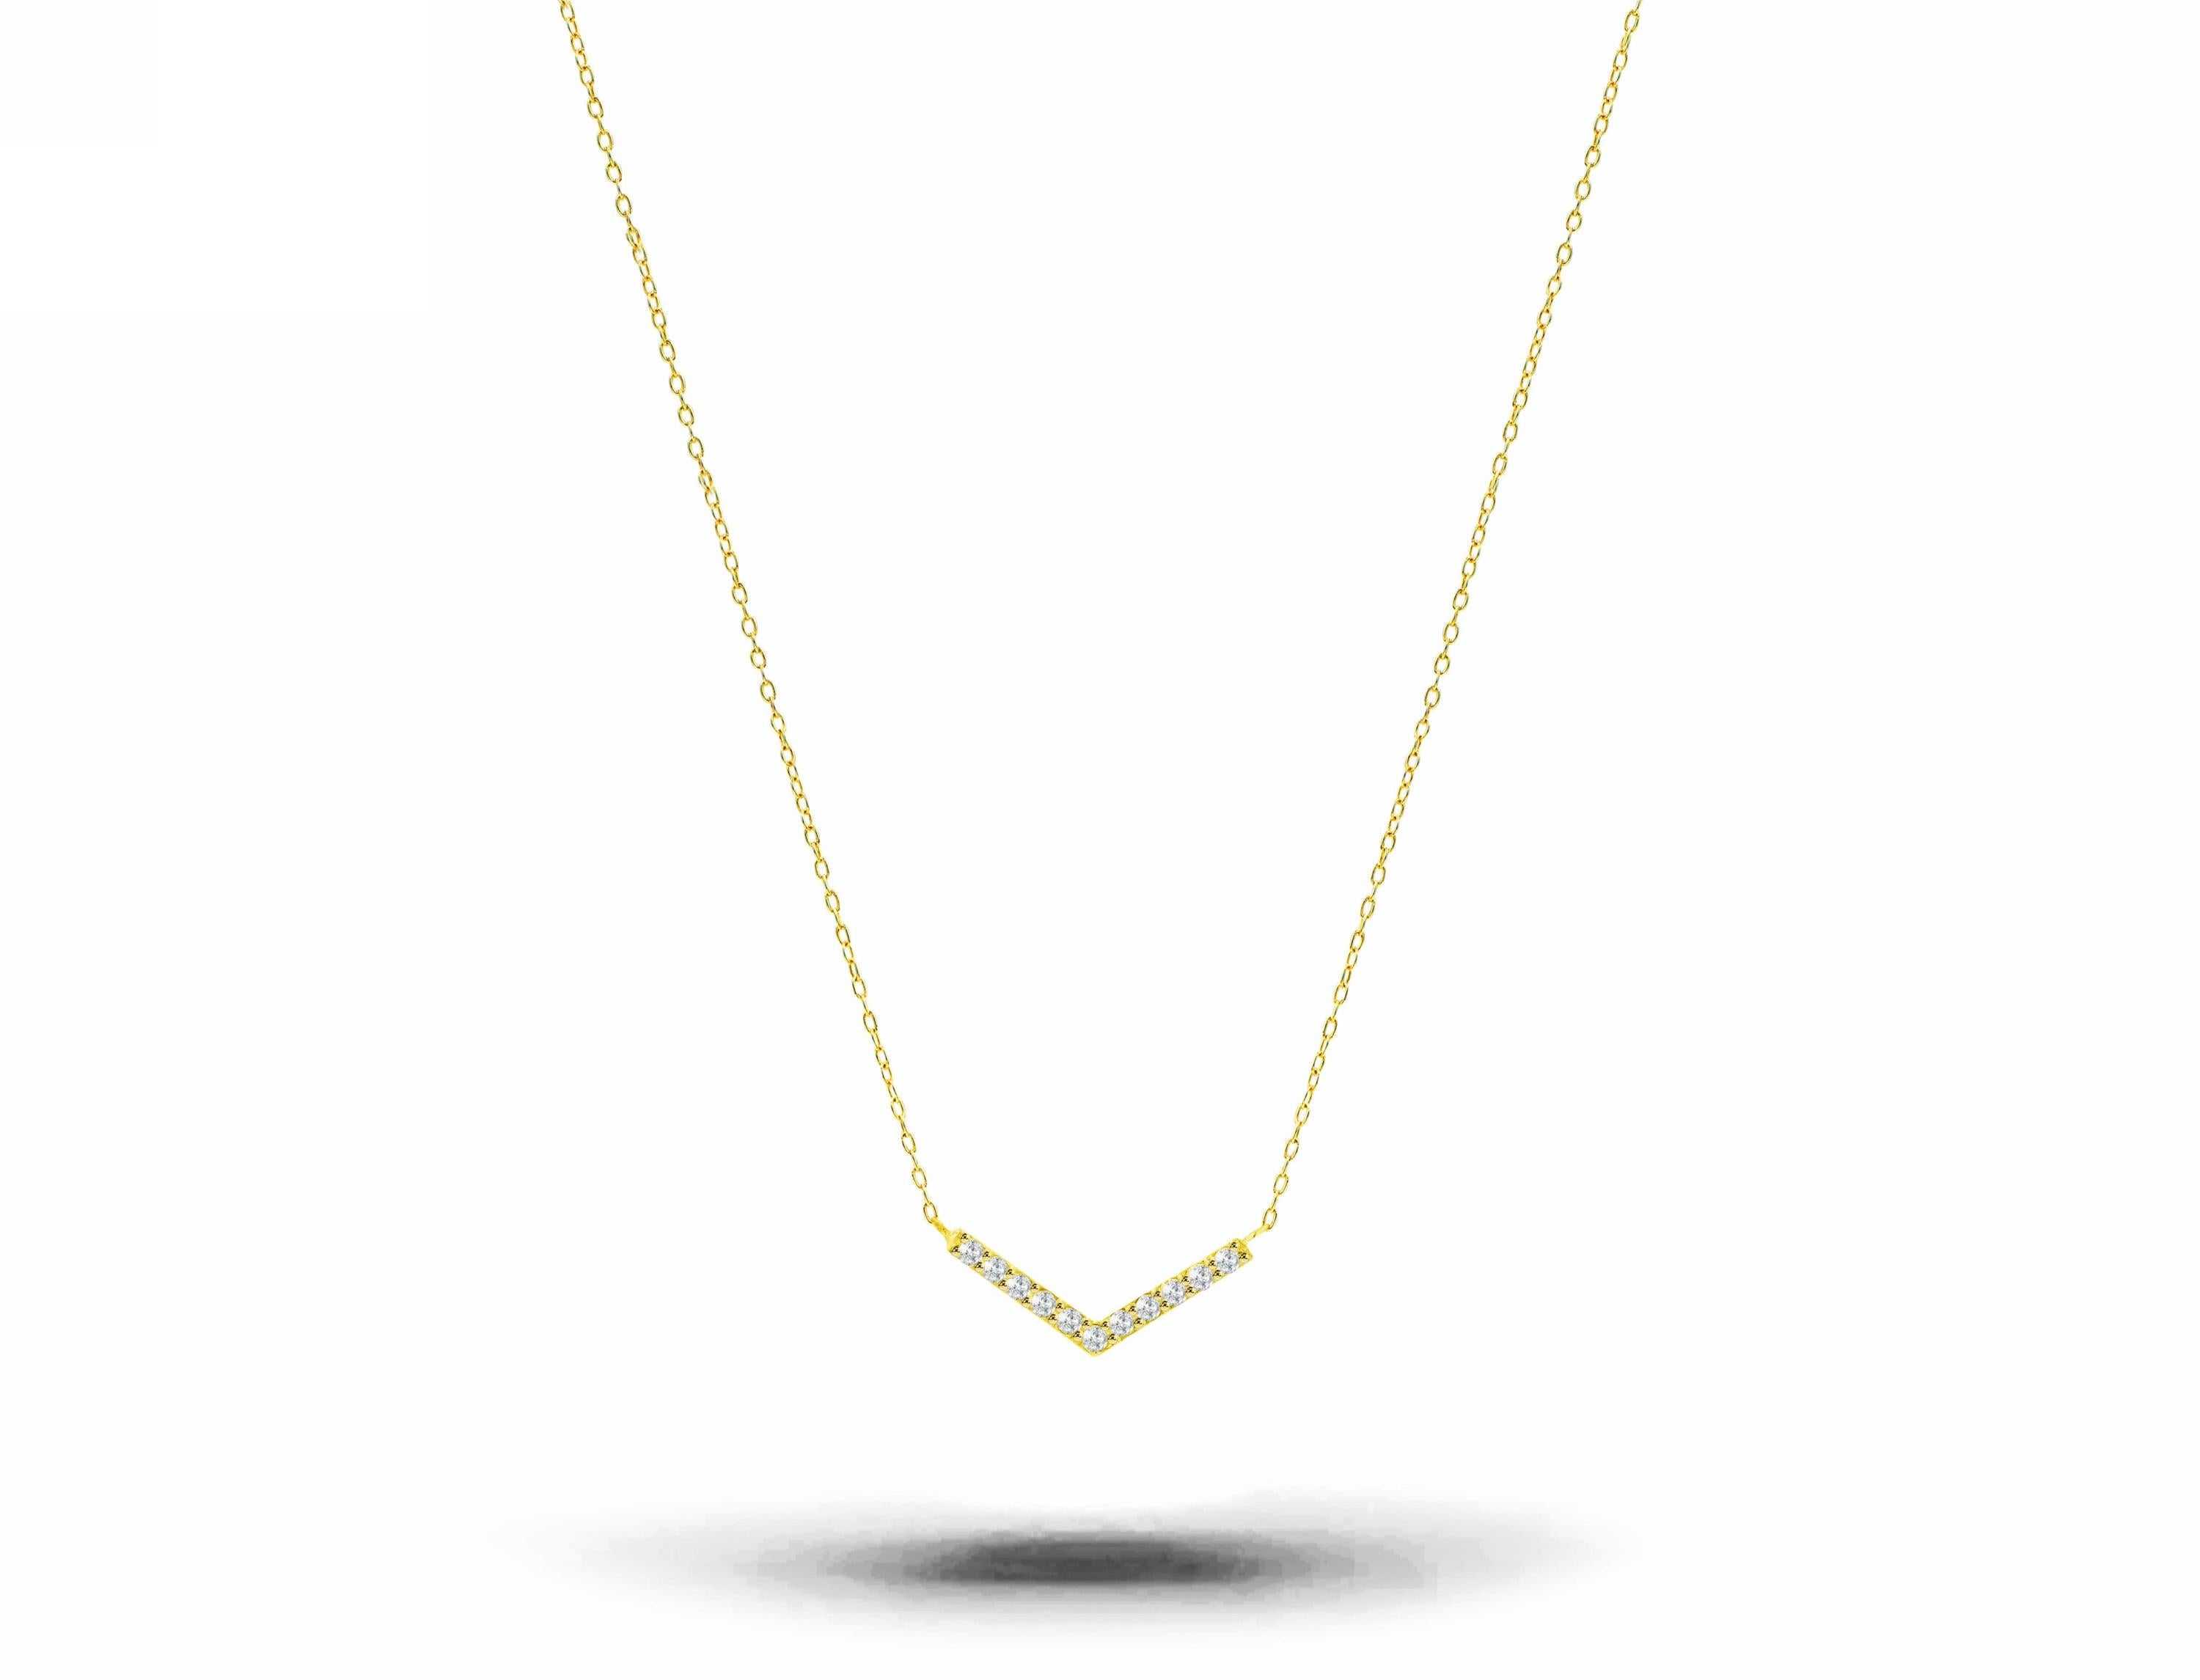 Délicat collier à chevrons avec diamant naturel en or massif 18 carats disponible en trois couleurs : or rose, or blanc et or jaune.

Ce collier moderne et minimaliste est un cadeau parfait pour vos proches et peut être porté en toute occasion ou au